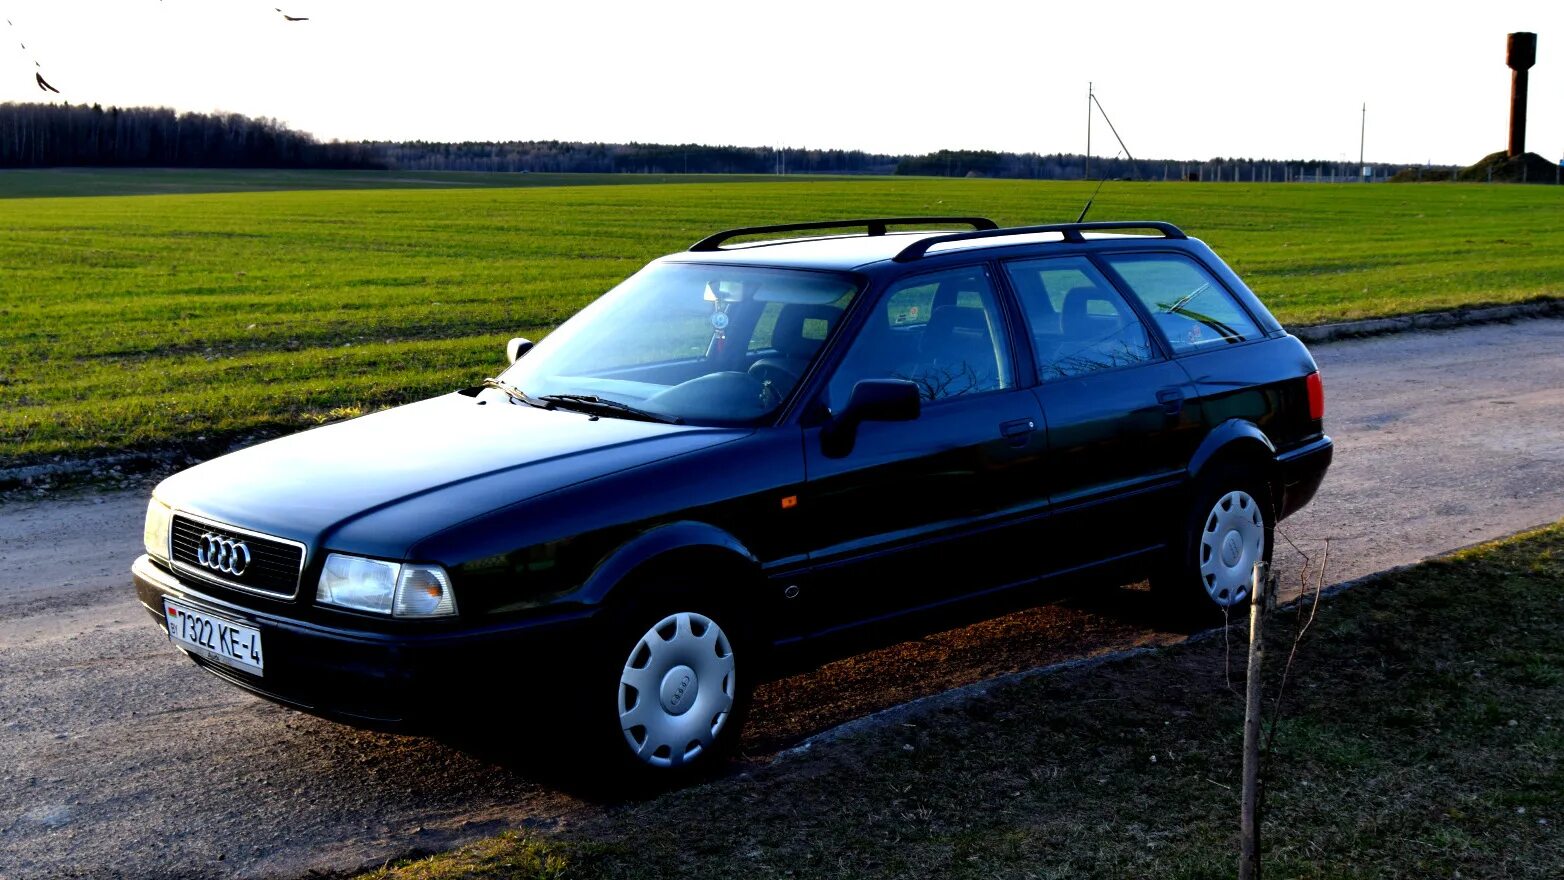 Купить ауди 80 в белоруссии. Ауди 80 в4 универсал. Ауди 80 б4 Авант. Audi 80 b4 универсал. Audi 80 универсал 1994.